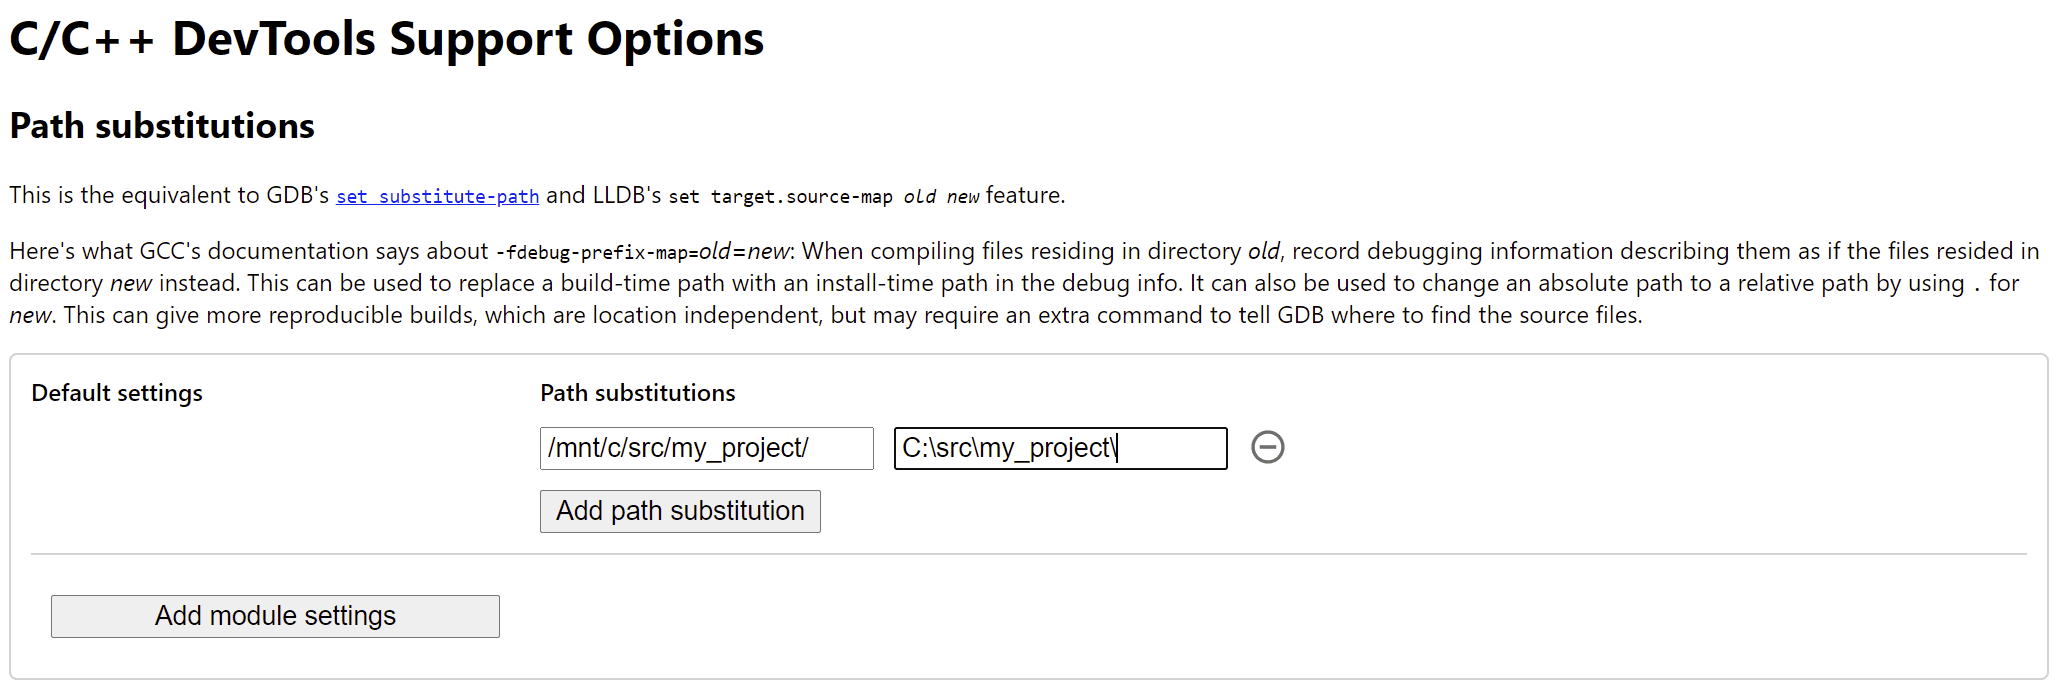 Página de opções da extensão de depuração C/C++